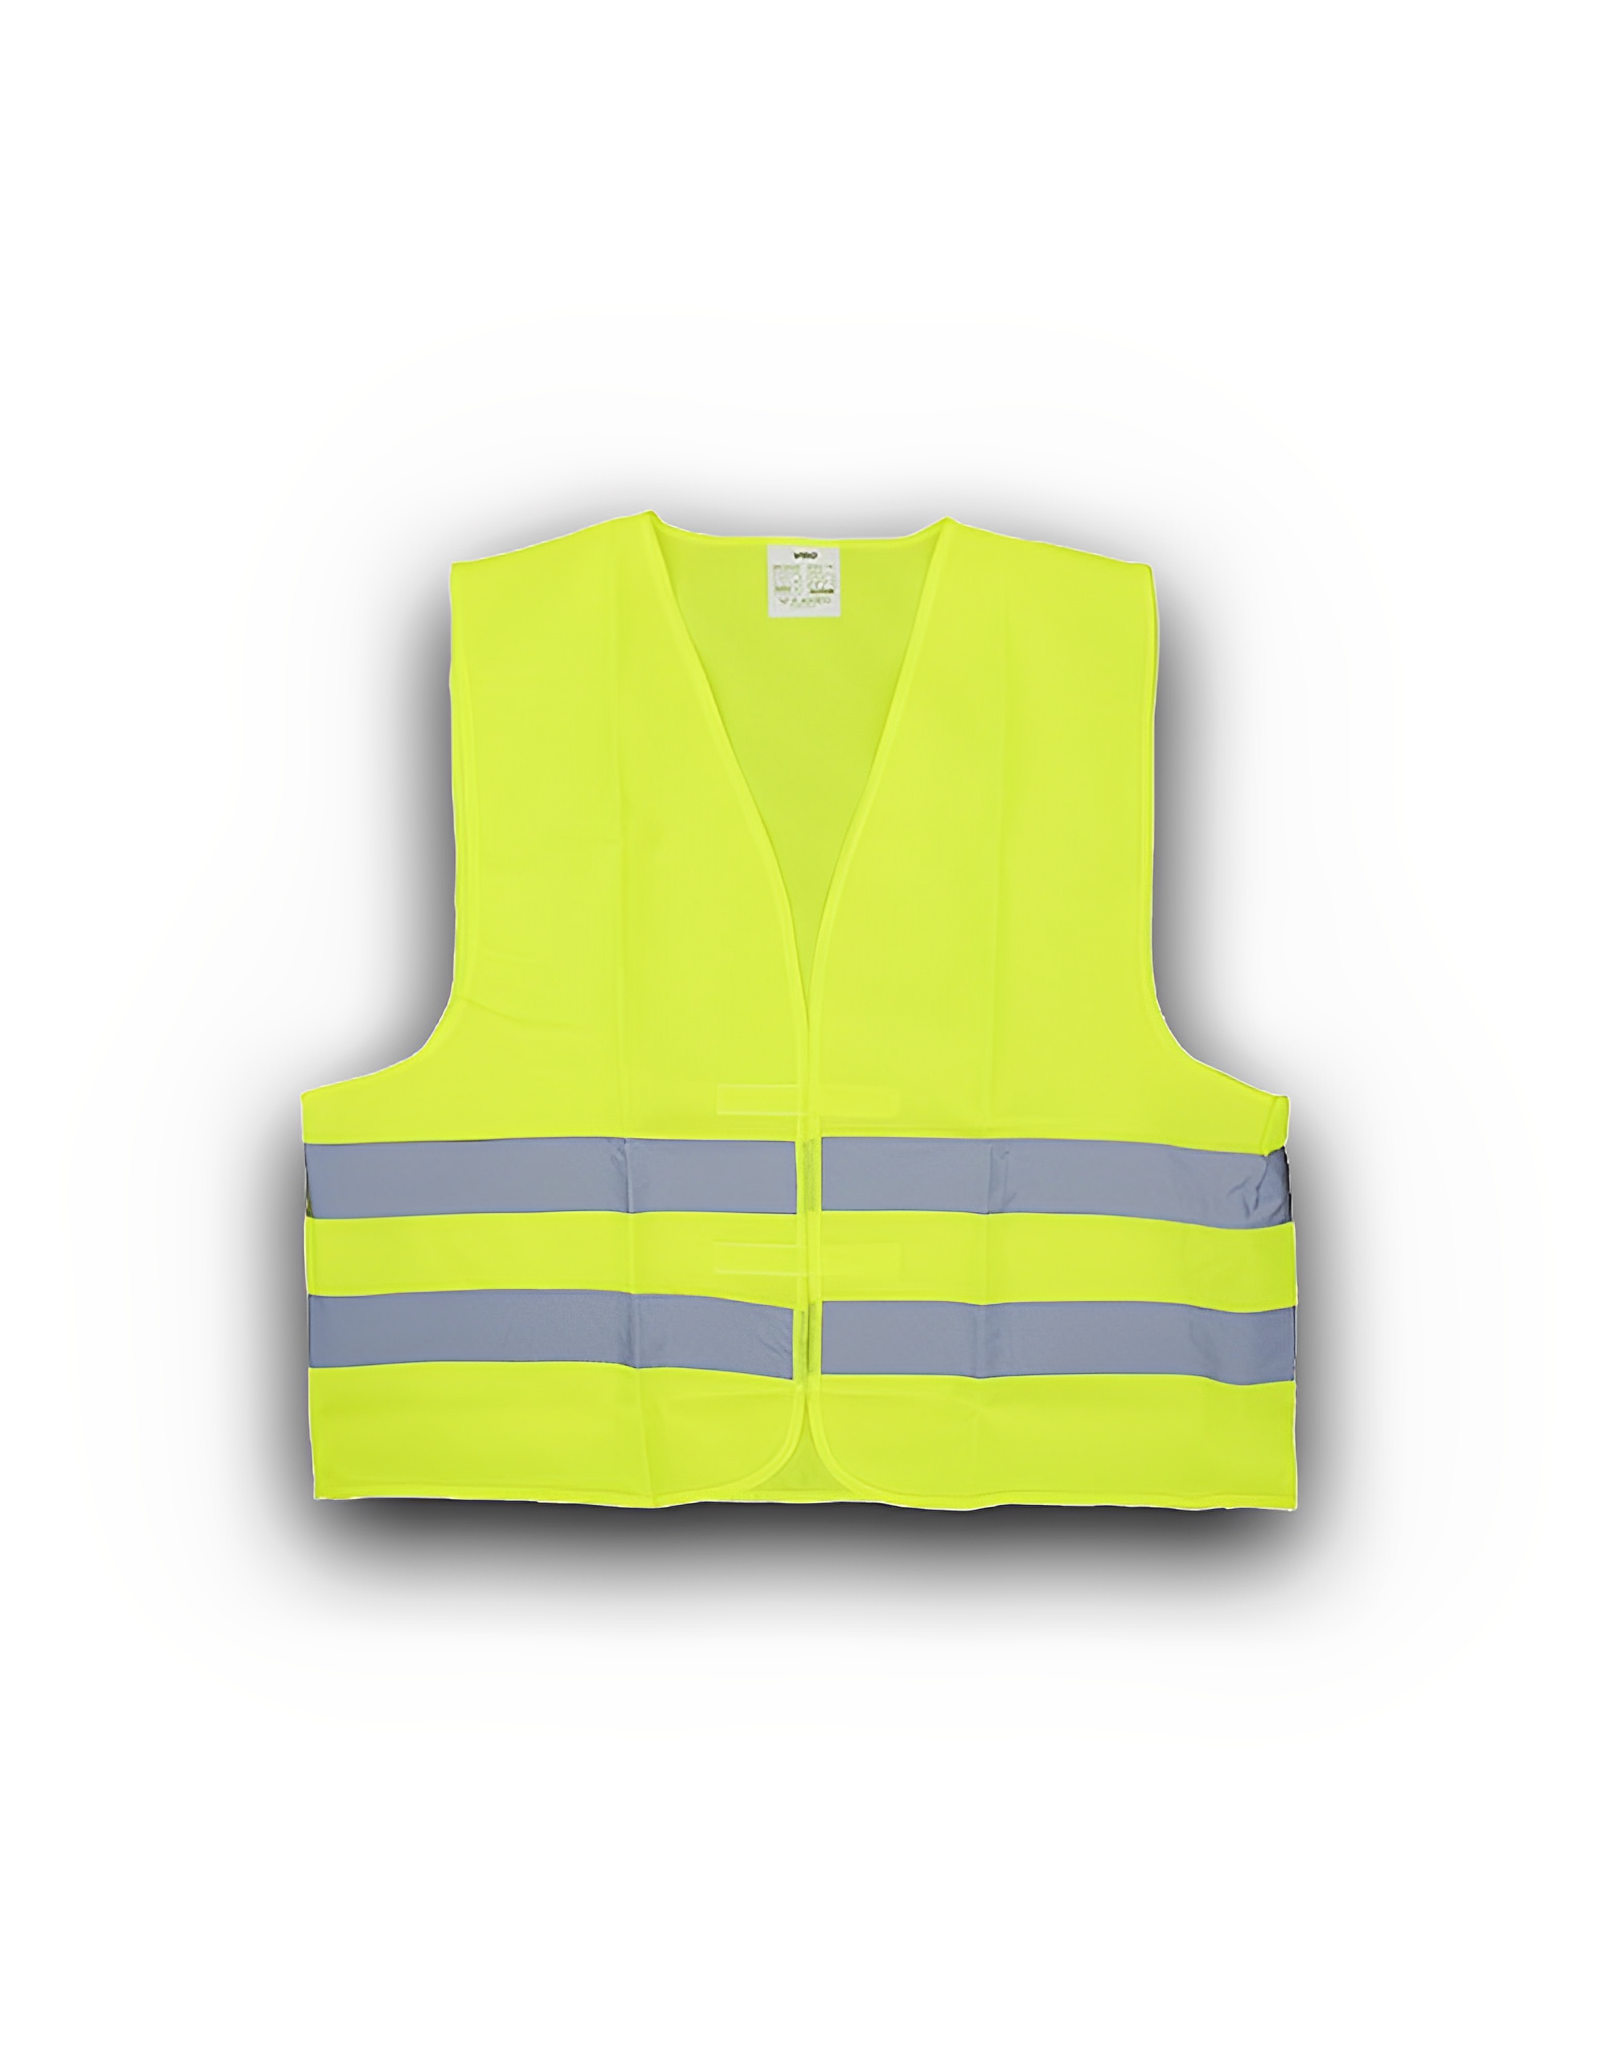 Situatie Shetland Begroeten Public safety vest Yellow – Eurotrafficstore.com